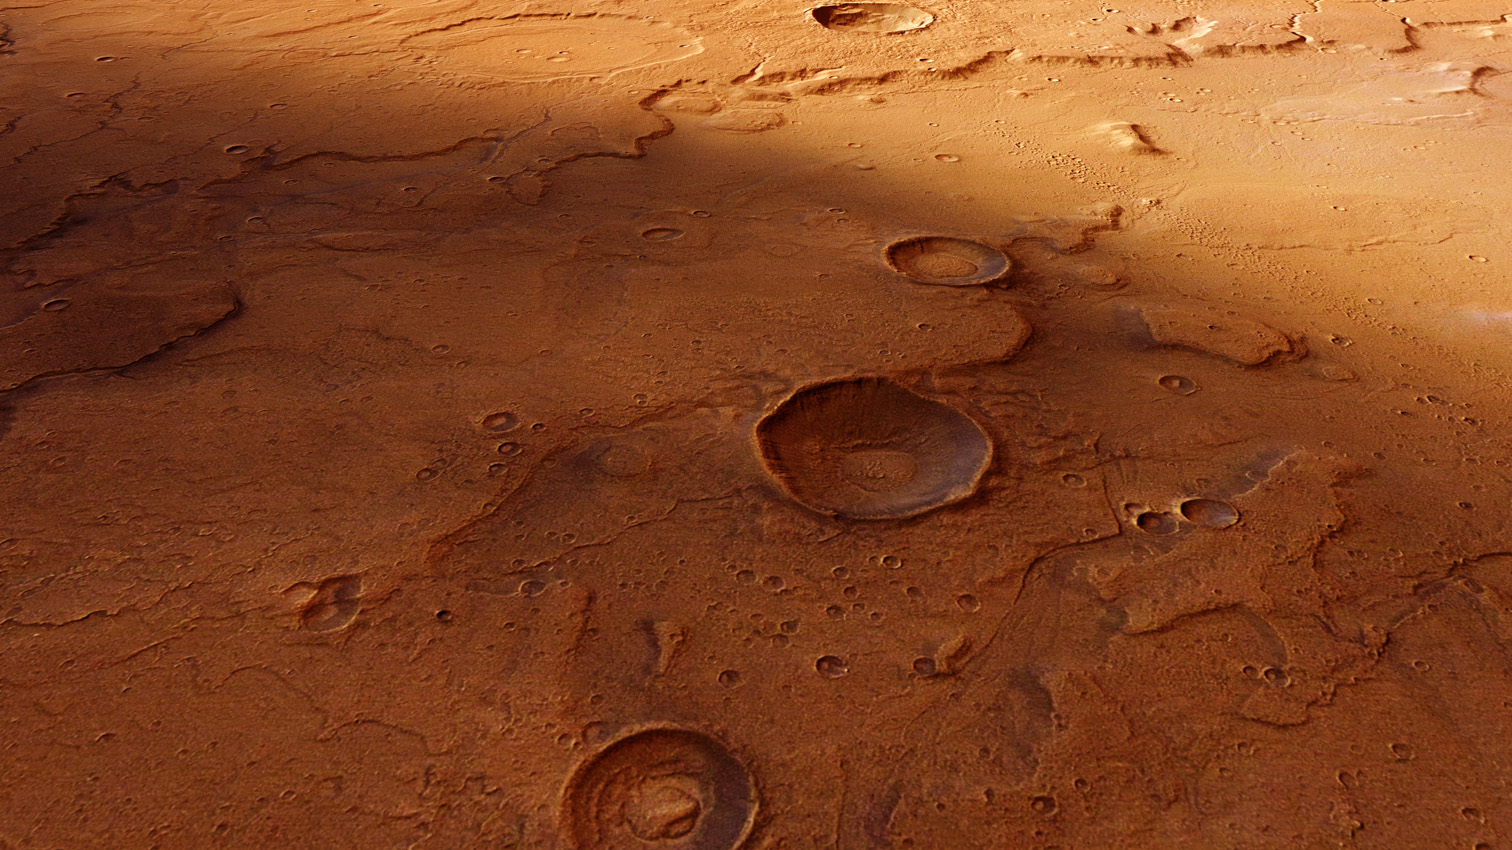 "Марс-Экспресс" возвращается к регионам древней воды на Марсе